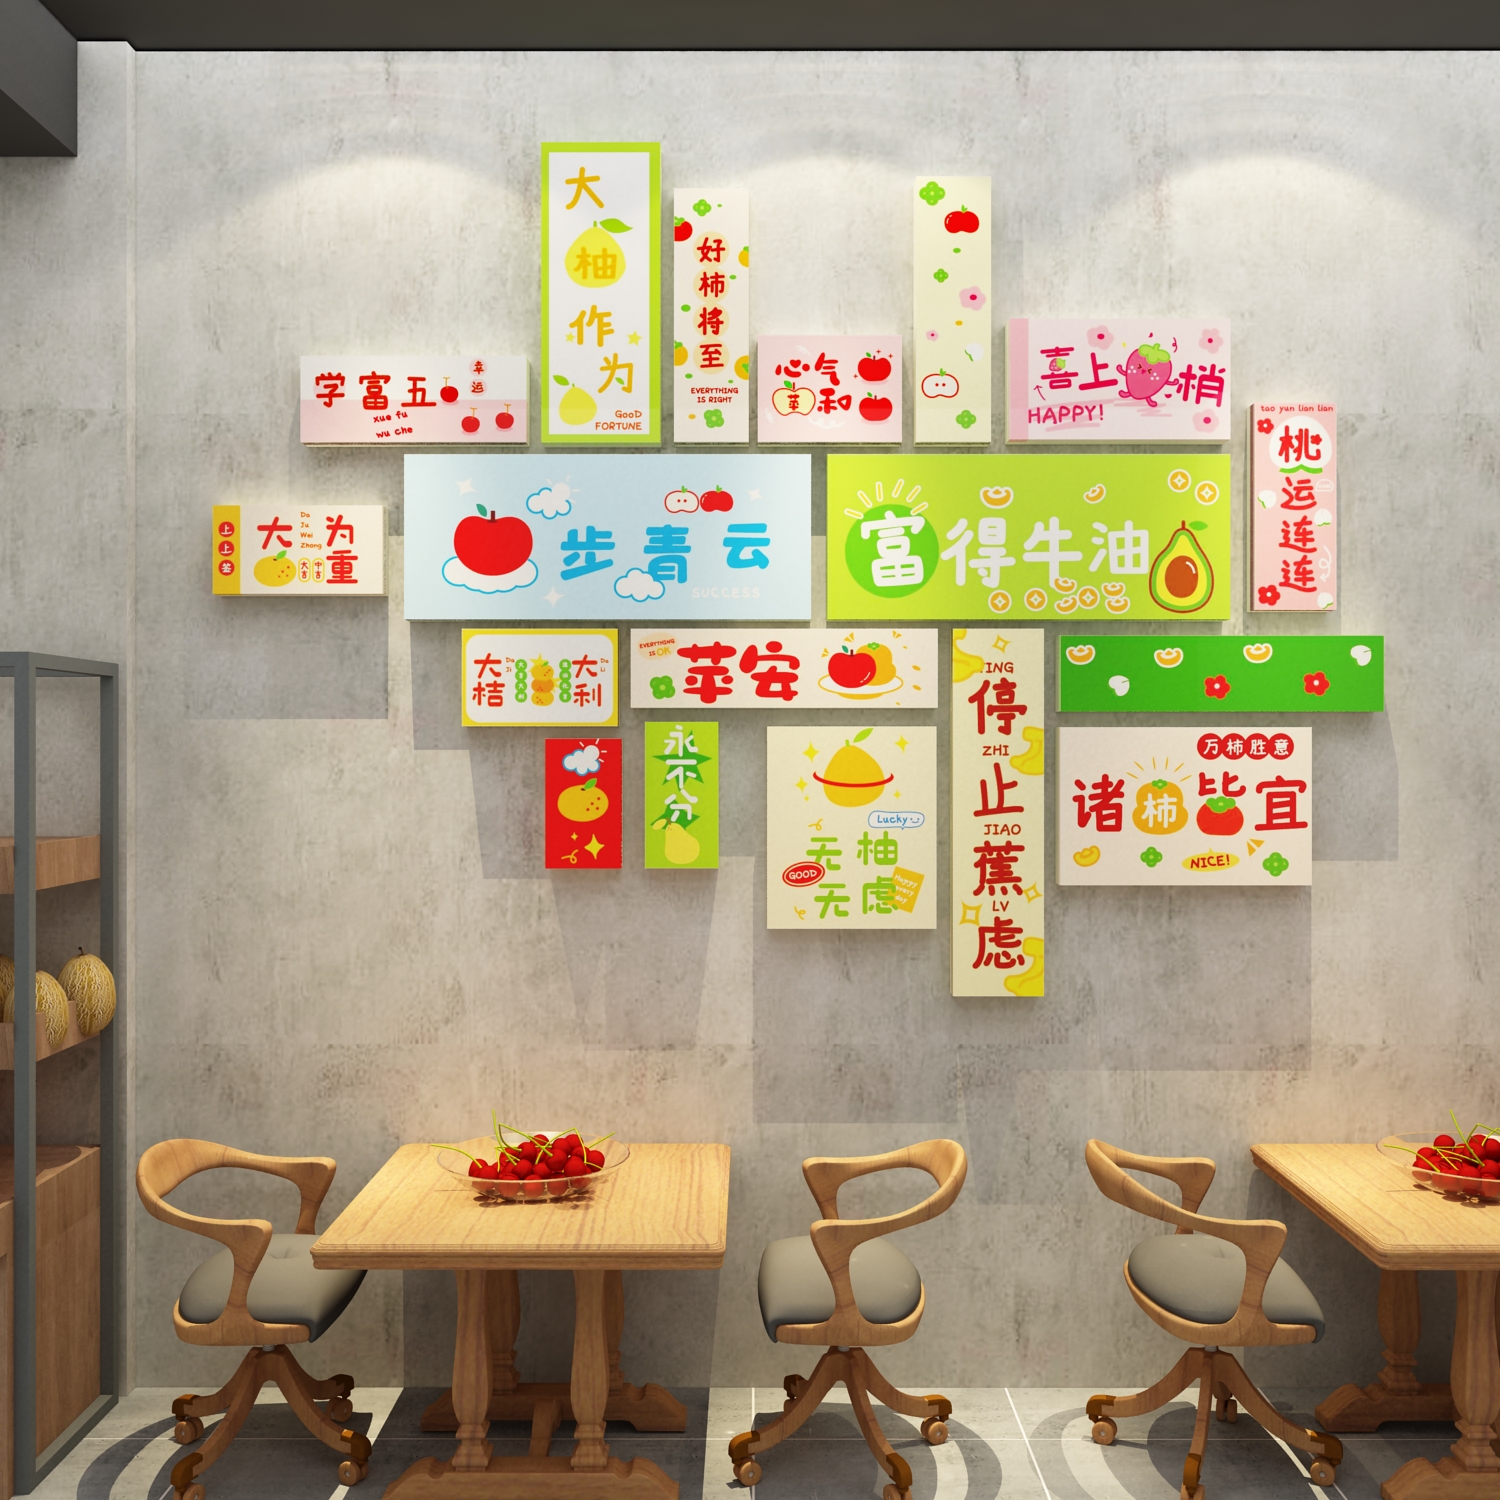 水果店装修布置网红生鲜超市收银台背景墙面装饰用品广告海报贴纸